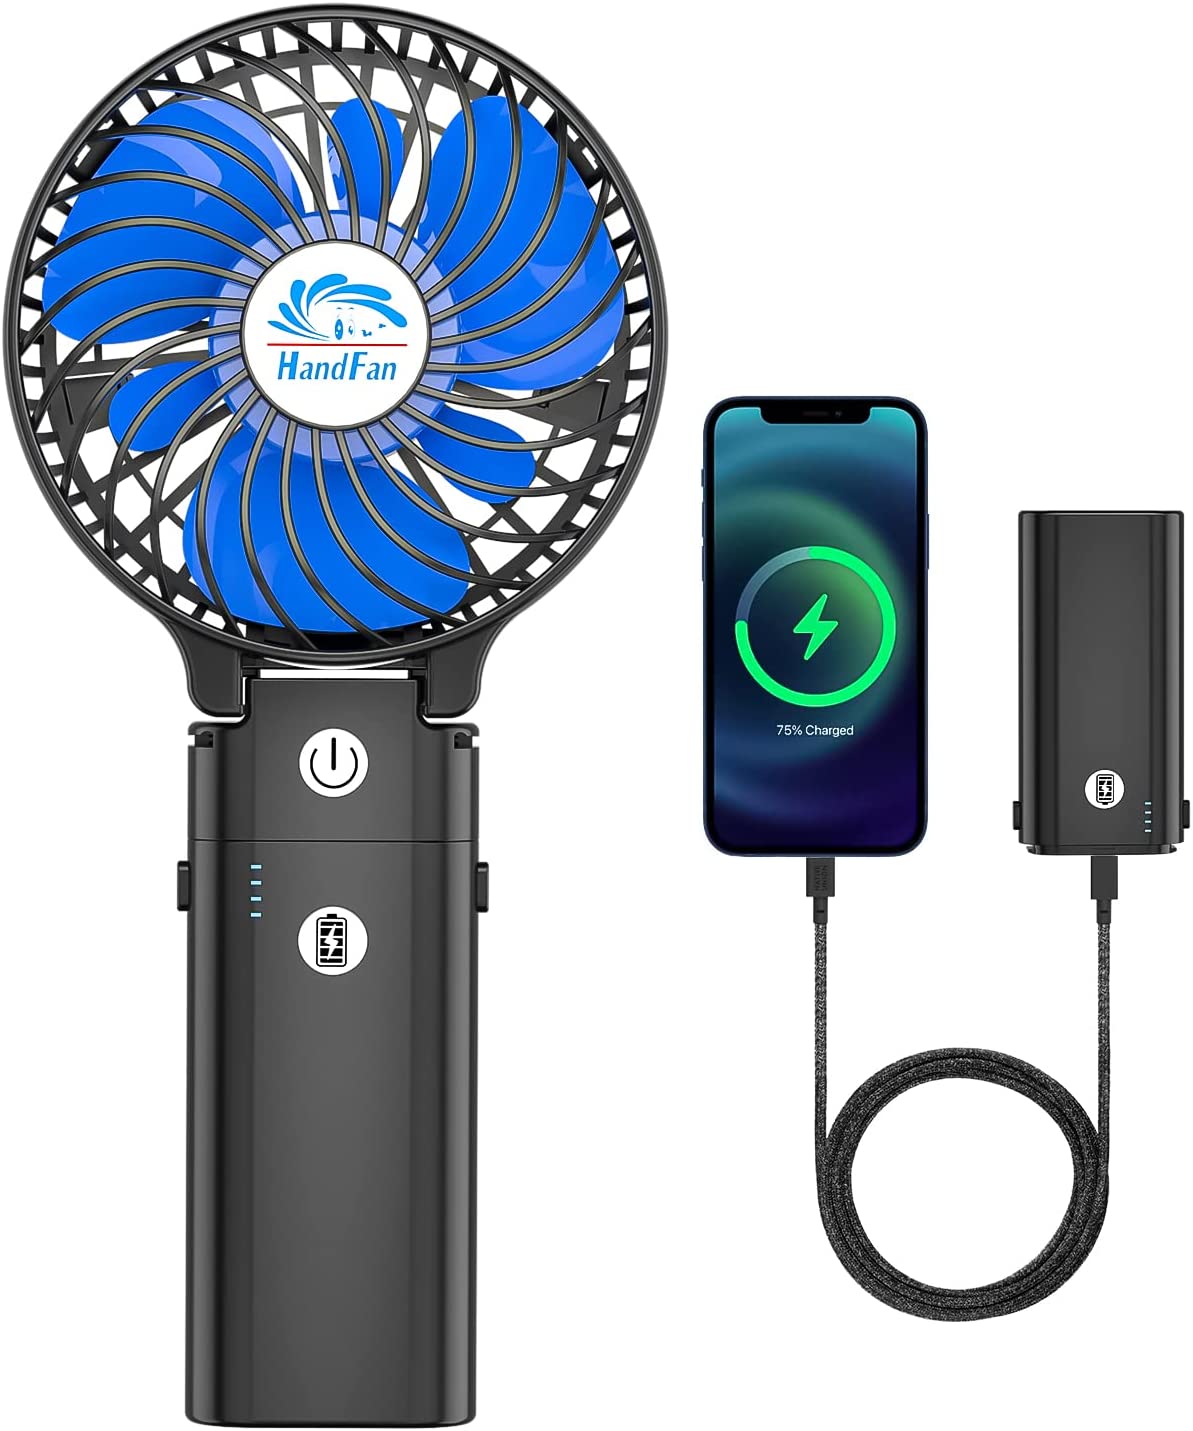 
                                    
                                Accessori da spiaggia tecnologici: dal gonfiabile con speaker al braccialetto per monitorare i raggi UV